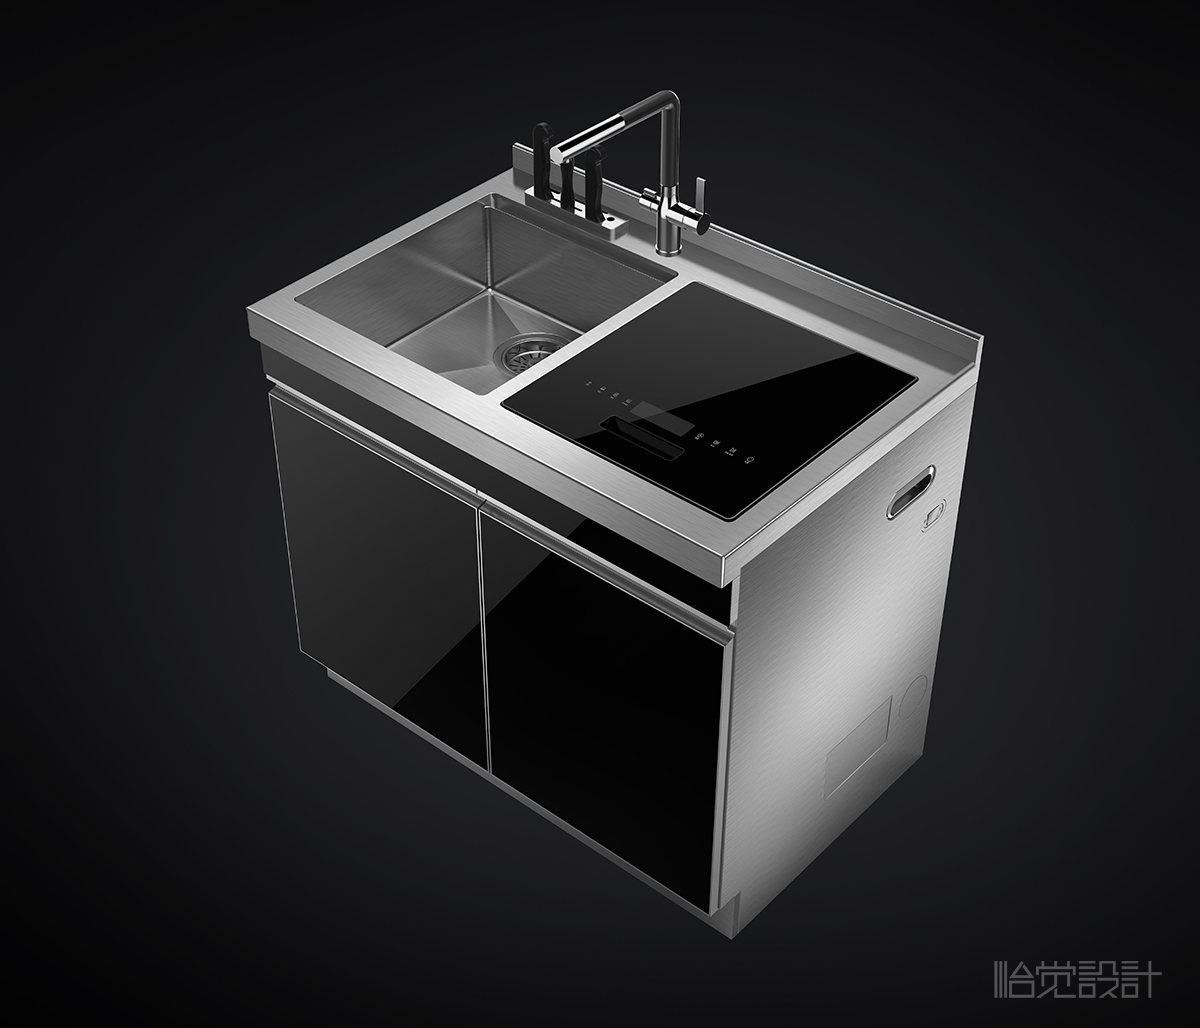 水槽- 集成水槽-智能水槽-集成灶-消毒柜-厨房用品-怡觉设计 (1).jpg